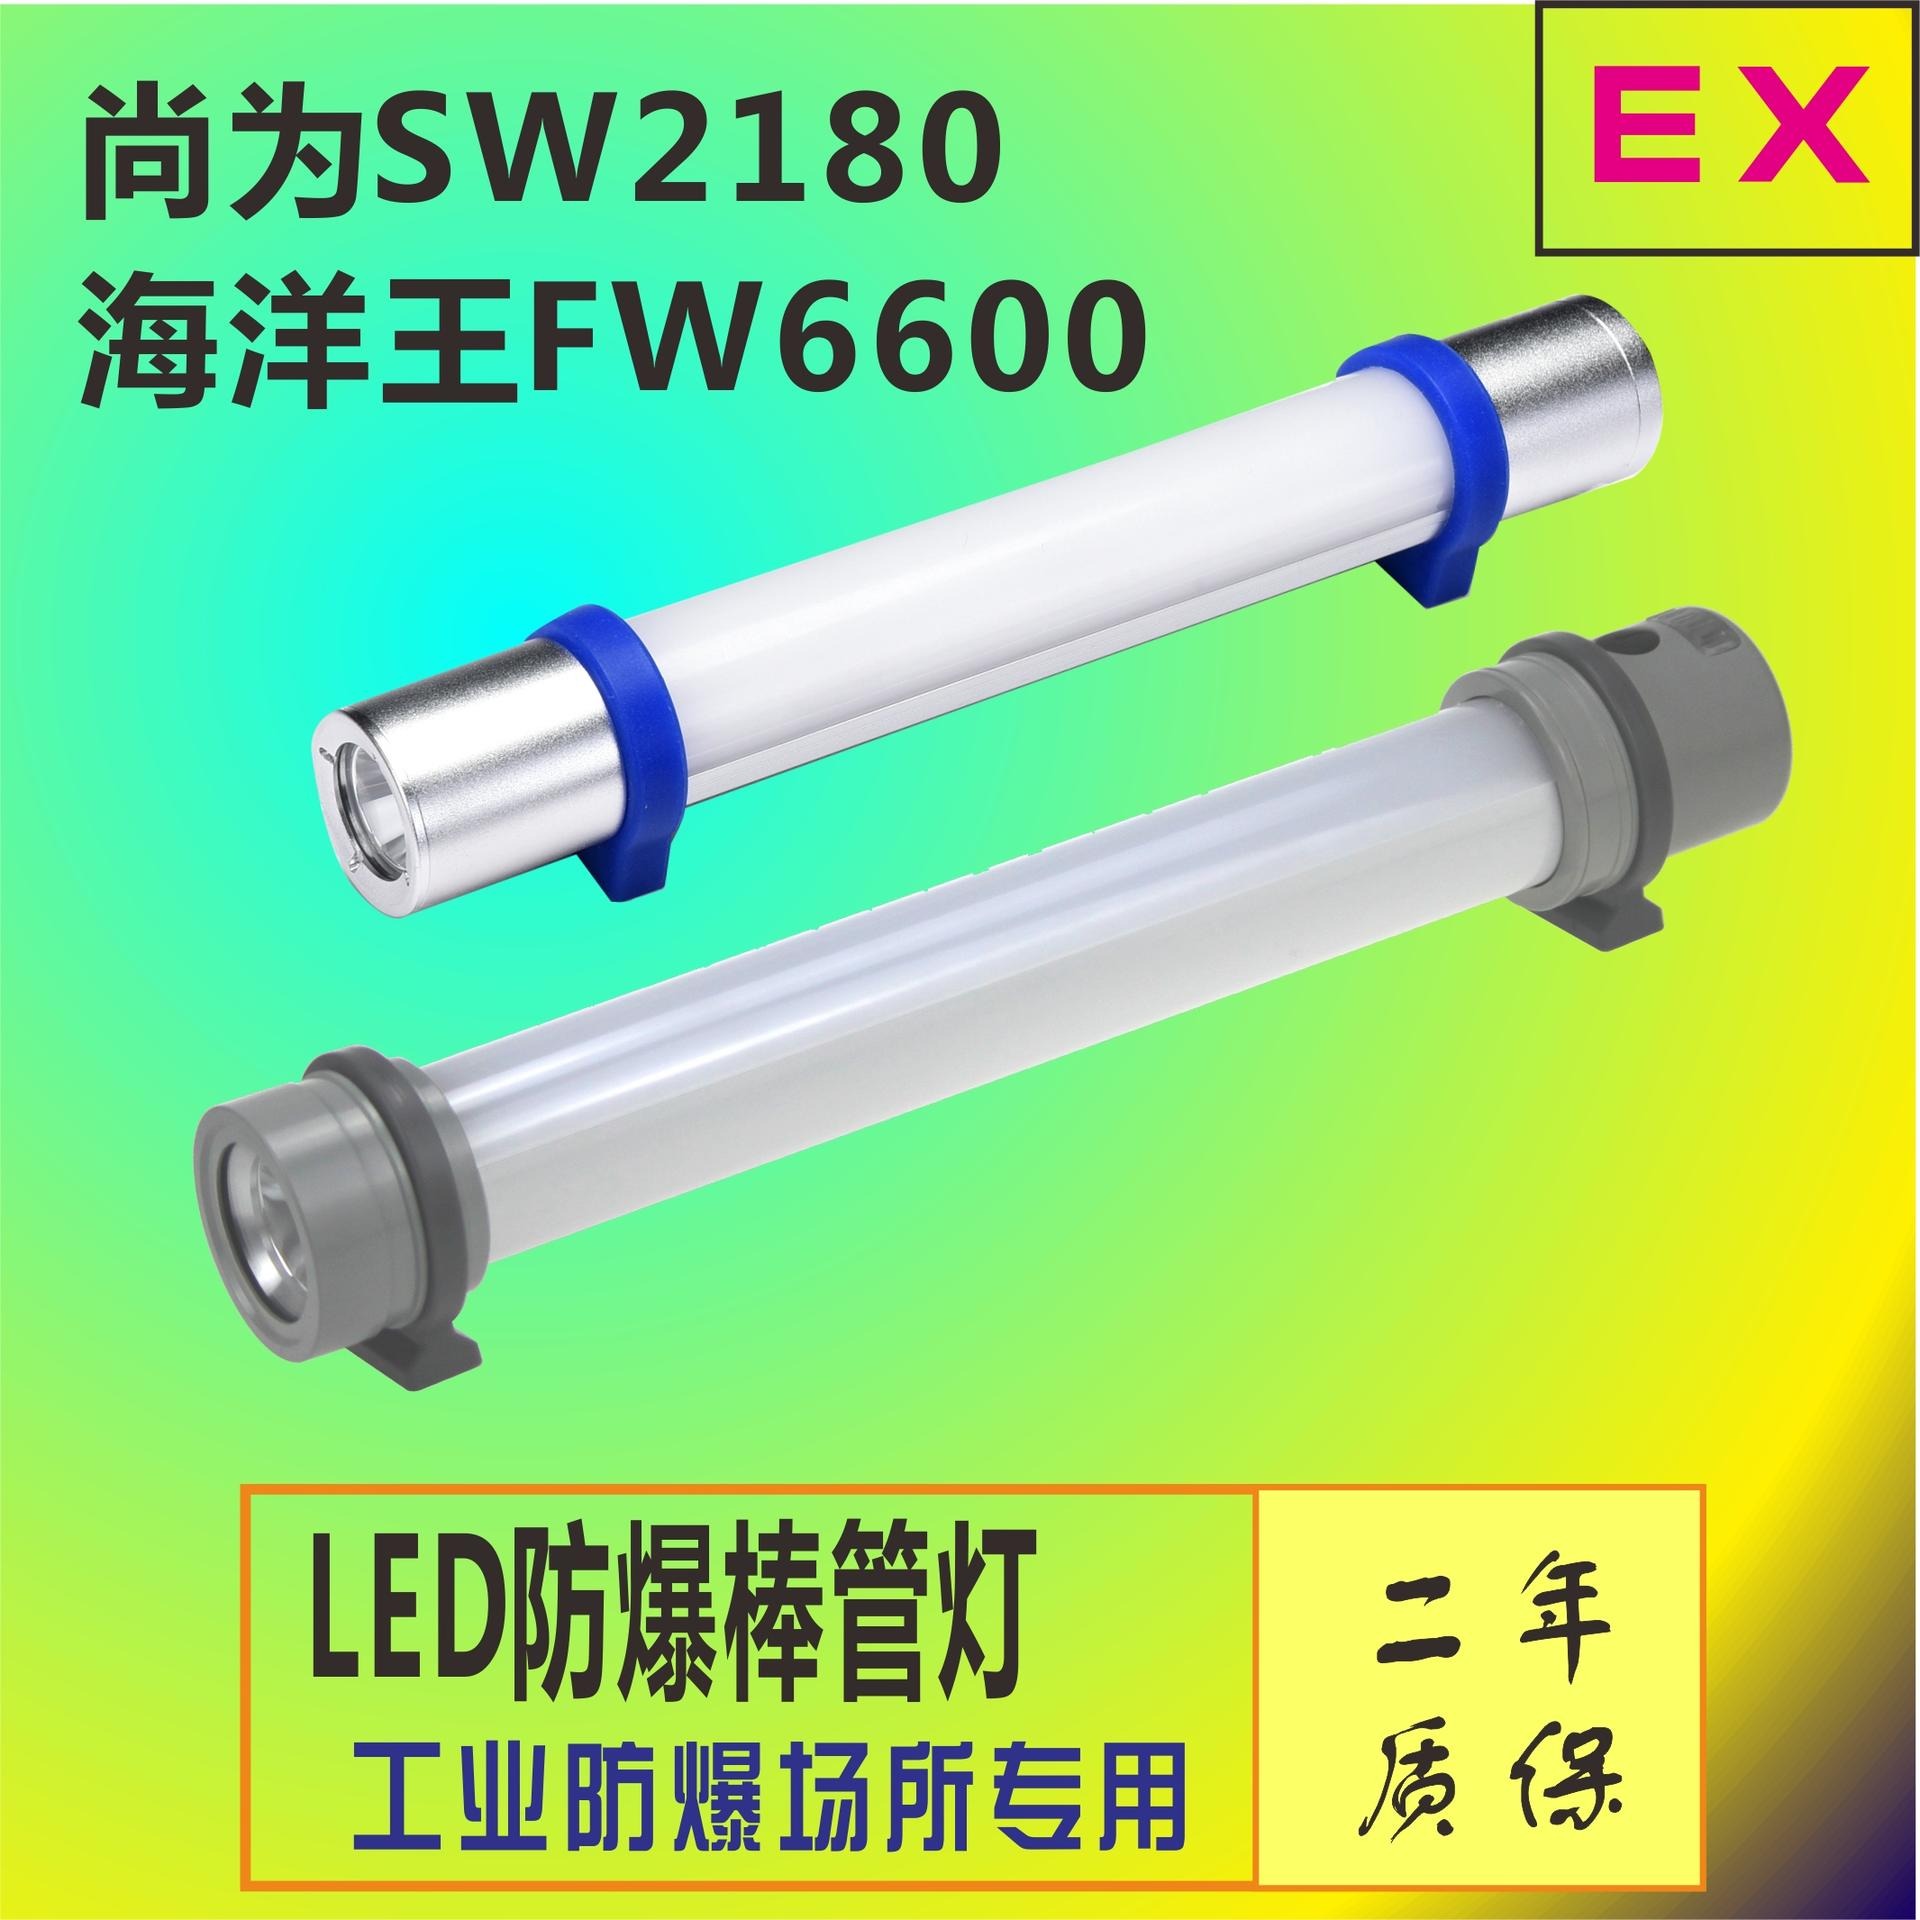 紫光YJ1055轻便式多功能工作棒 铁路冶金可磁吸式LED棒管灯 电力隧道巡查巡检手持工作灯